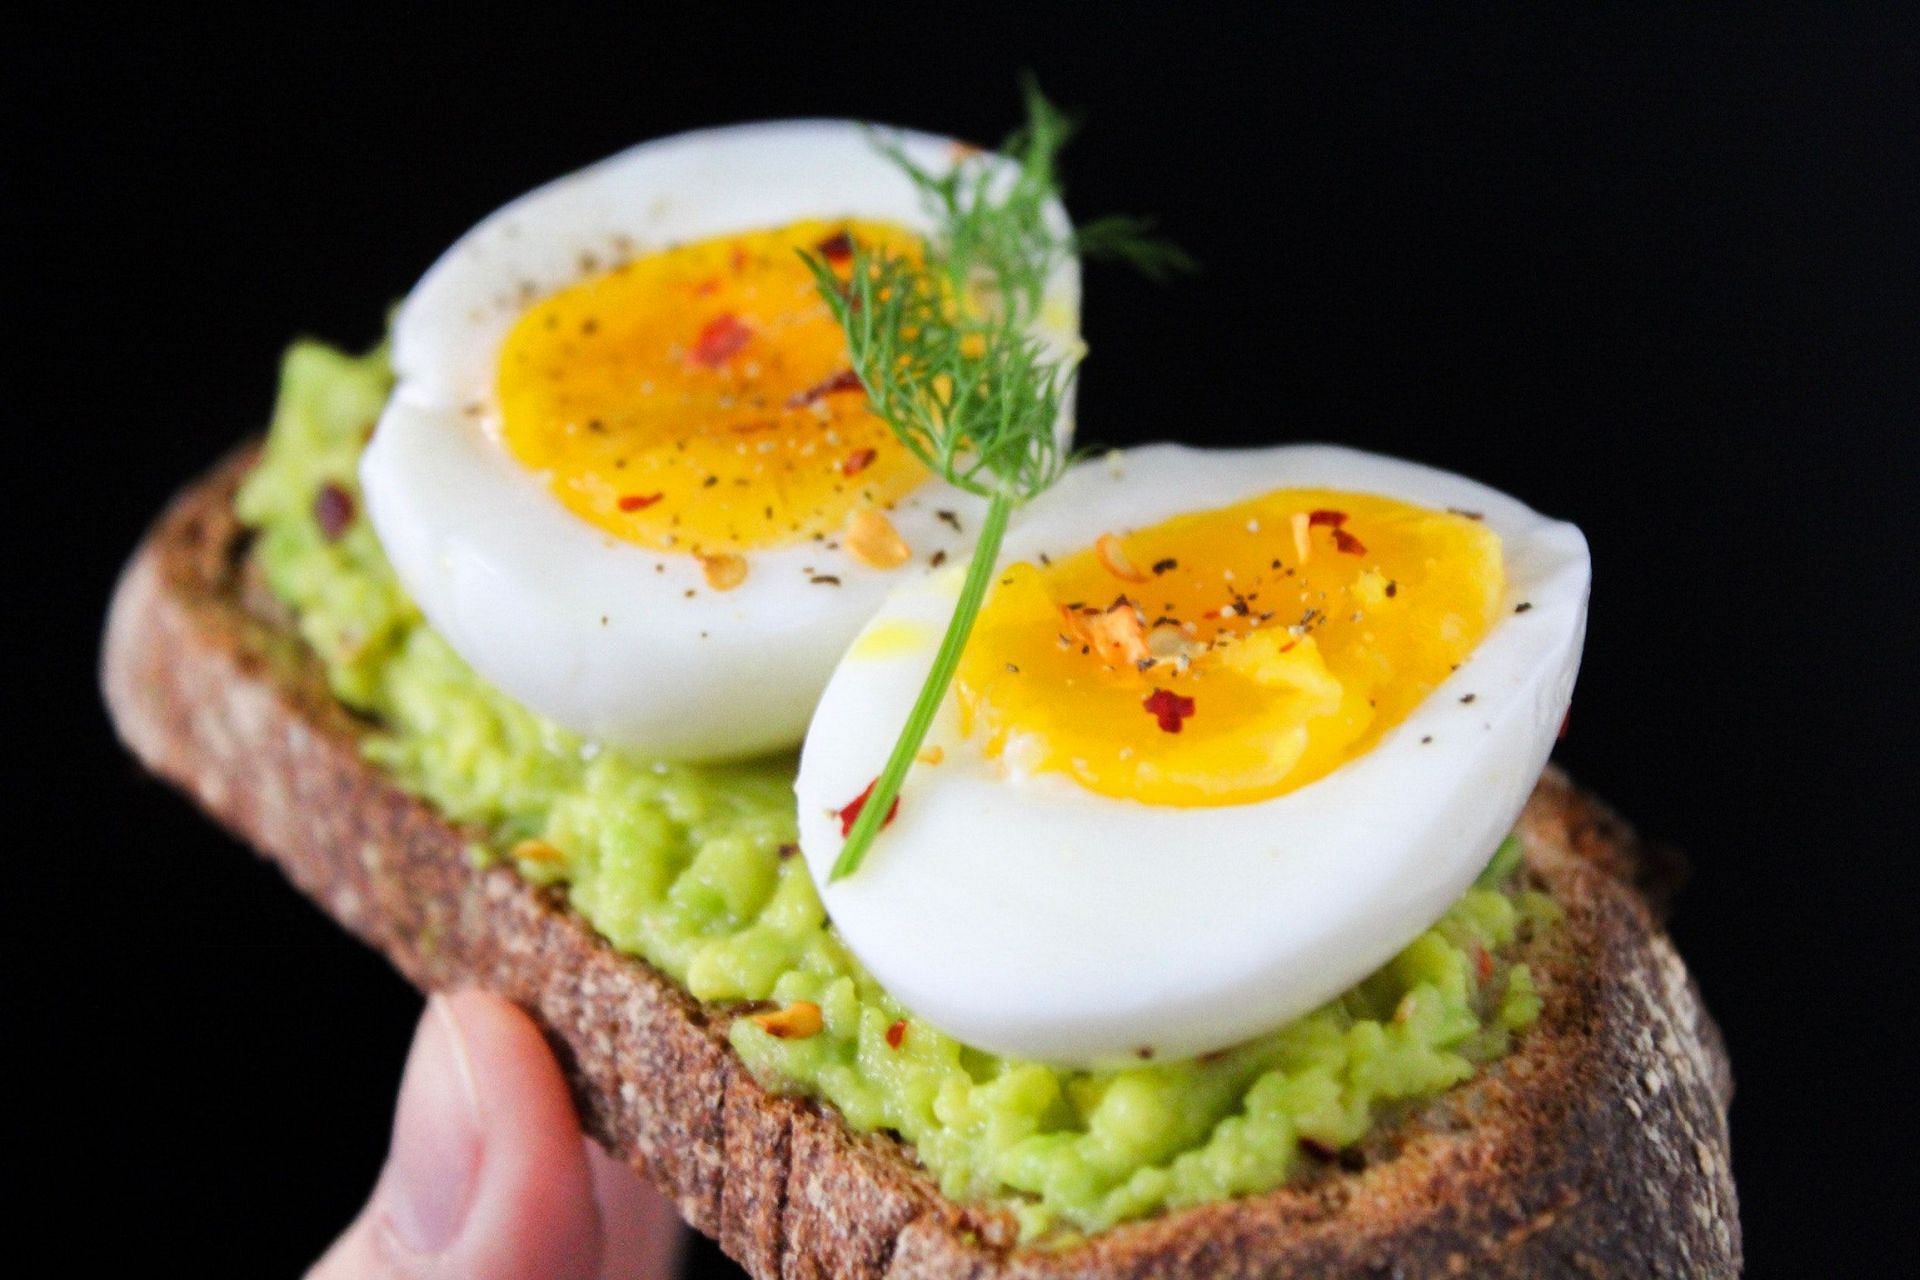 Eggs in breakfast helps prevent various diseases. (Image via Pexels / Trang Doan)